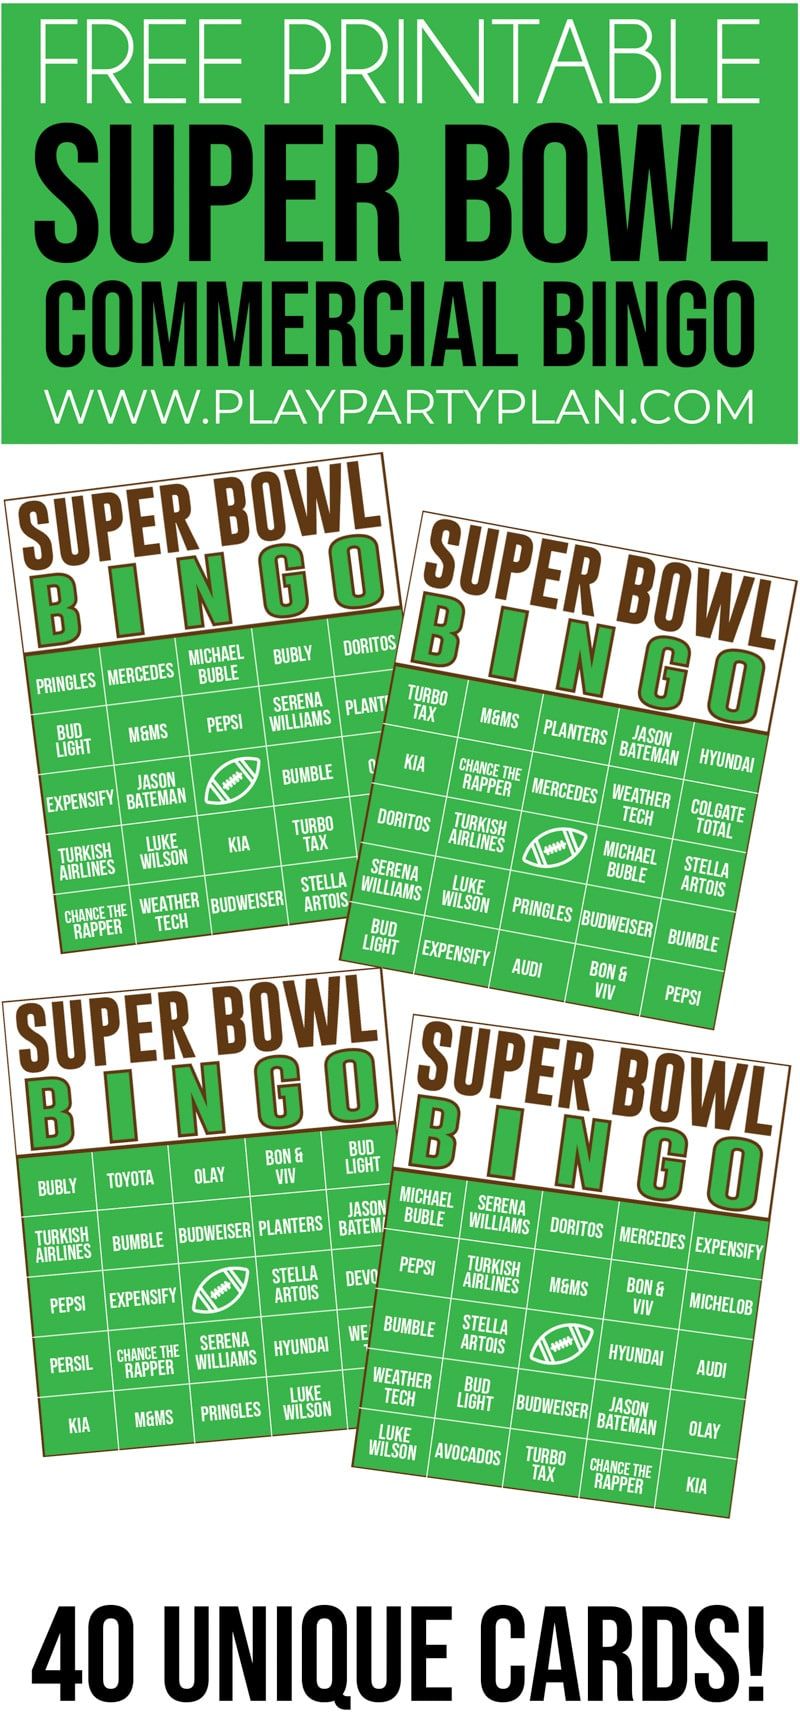 Ta komercialni bingo Super Bowl je ena najboljših zabavnih iger Super Bowl doslej! Kot nalašč za otroke ali odrasle!